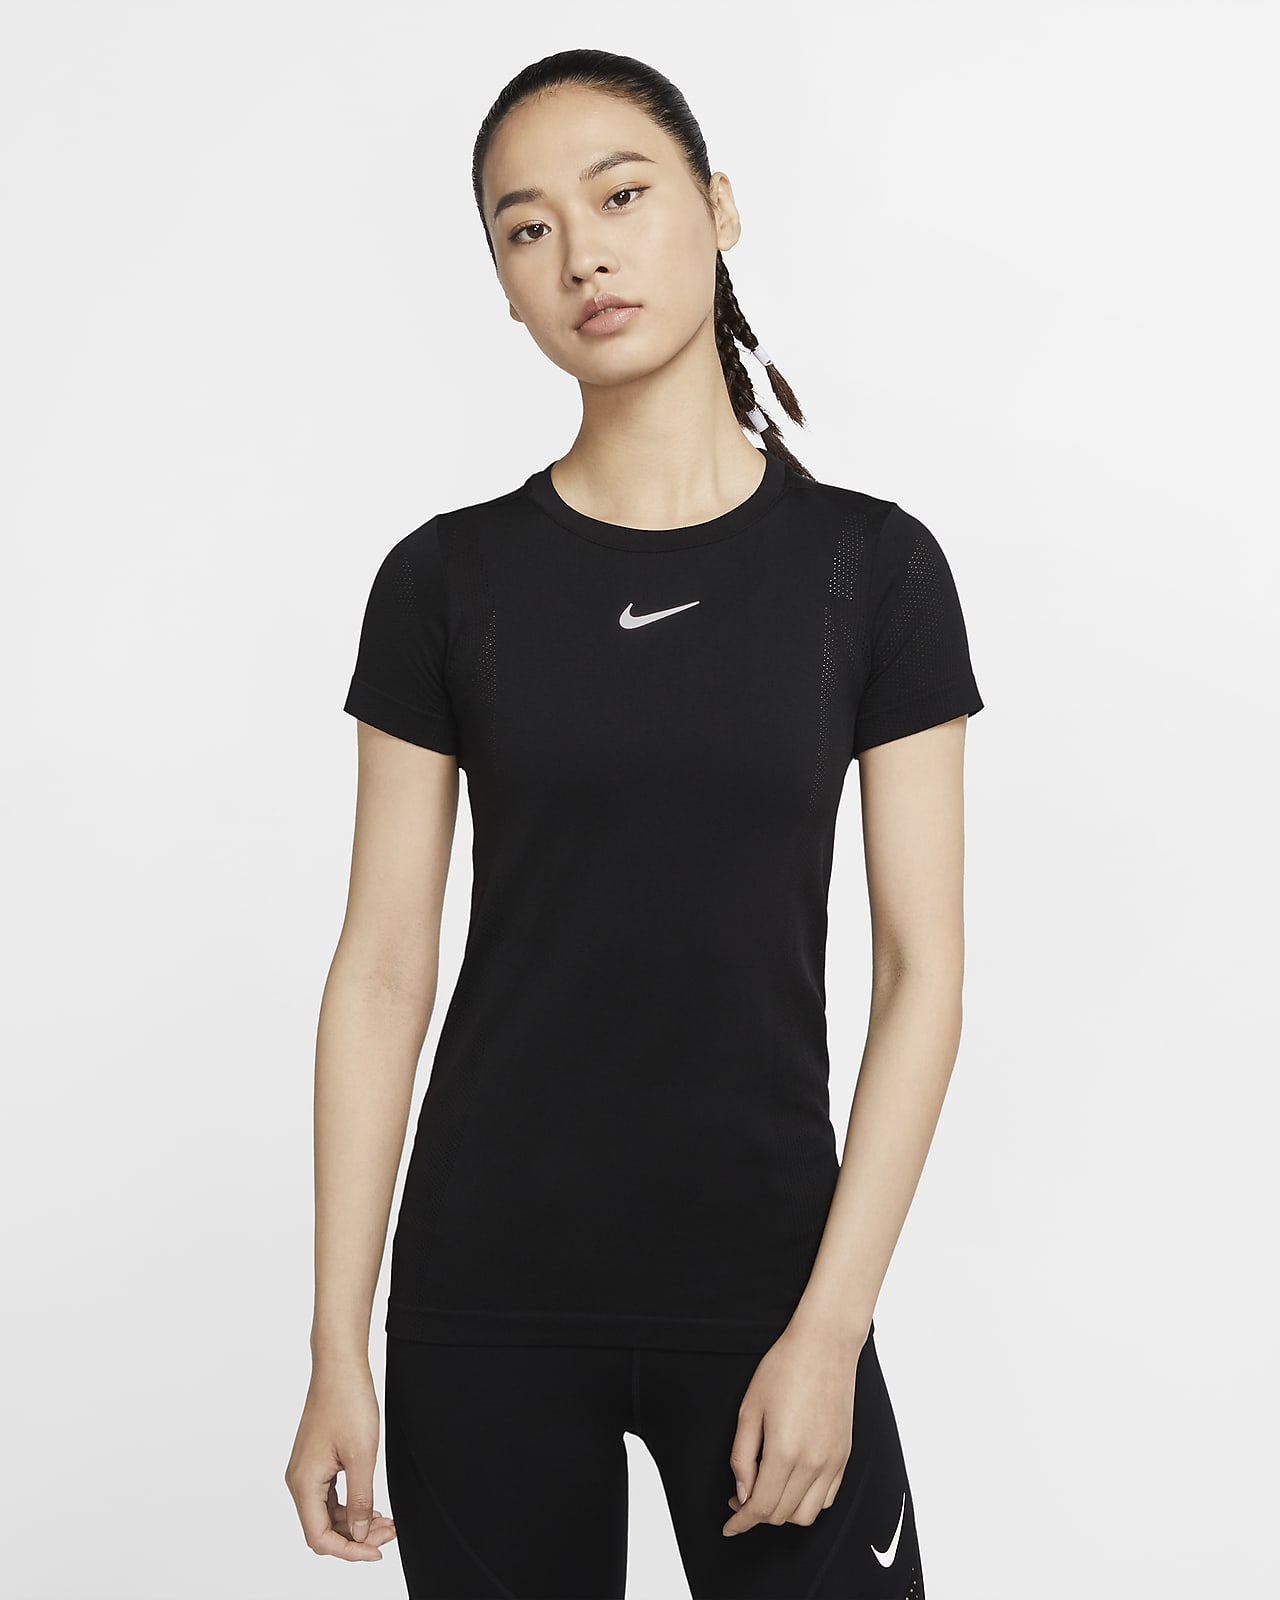 Nike Infinite Women's Running Top. Nike.com